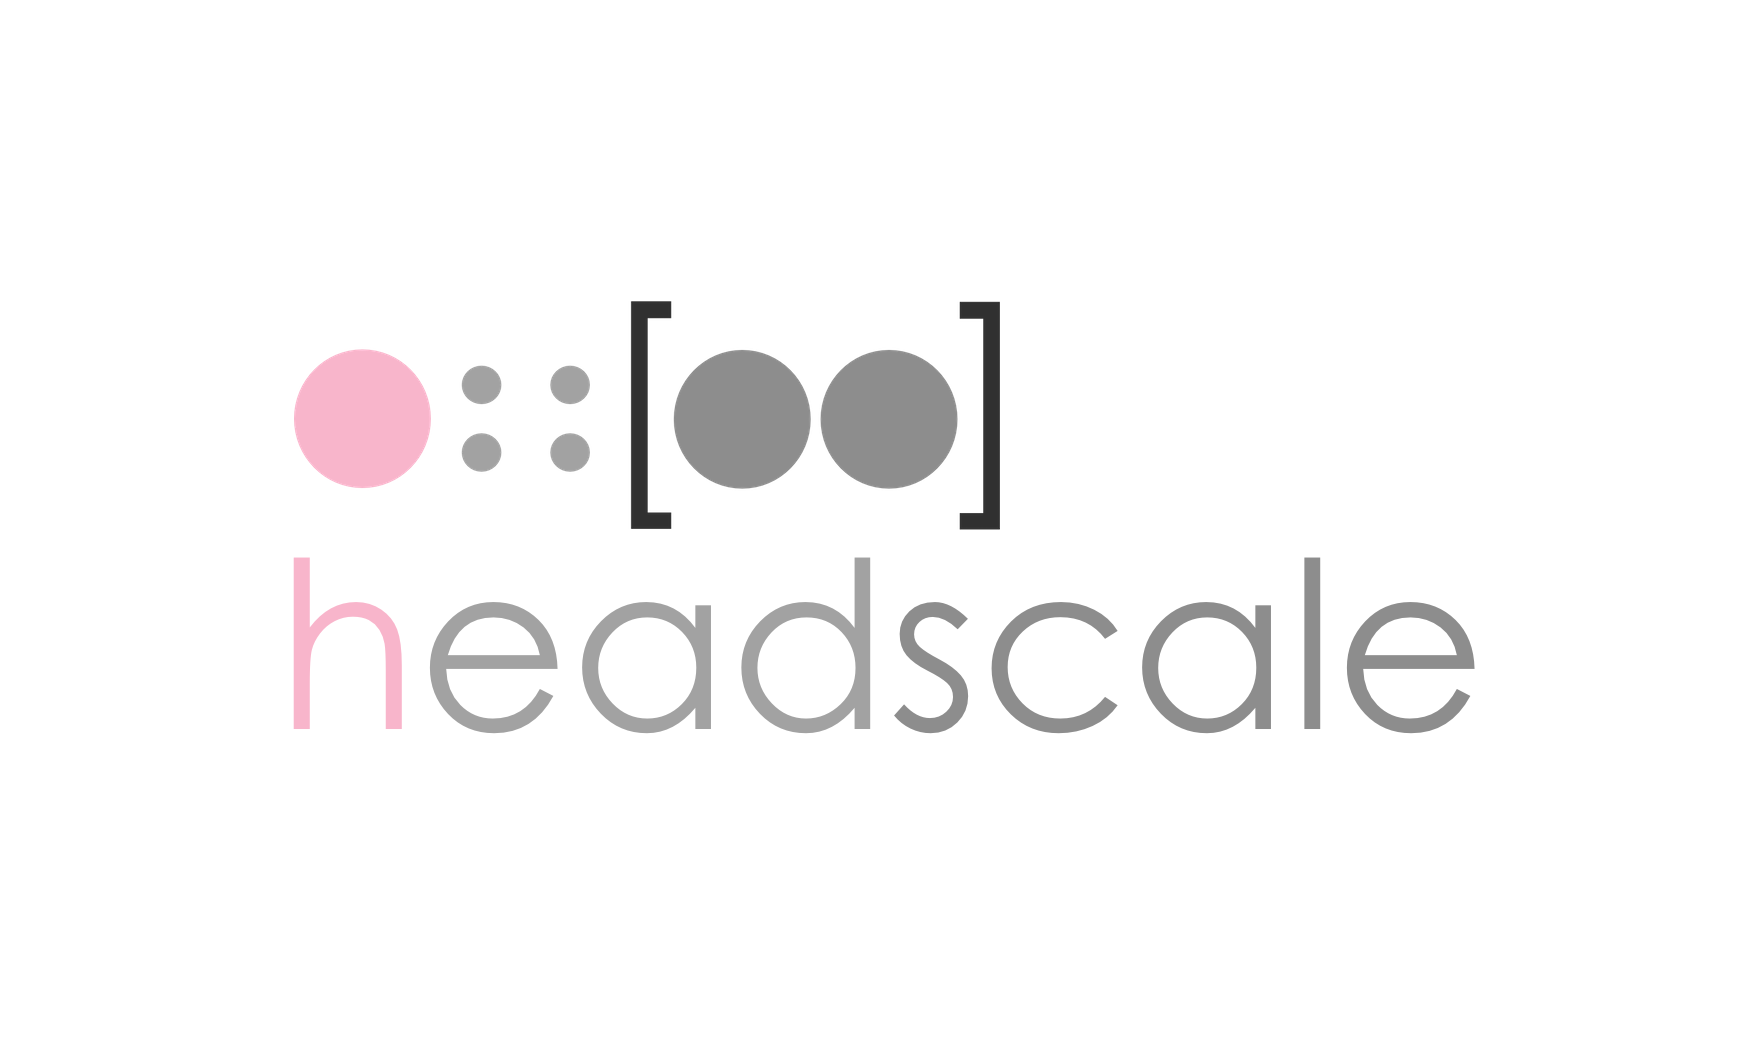 Headscale 搭建 P2P 内网穿透